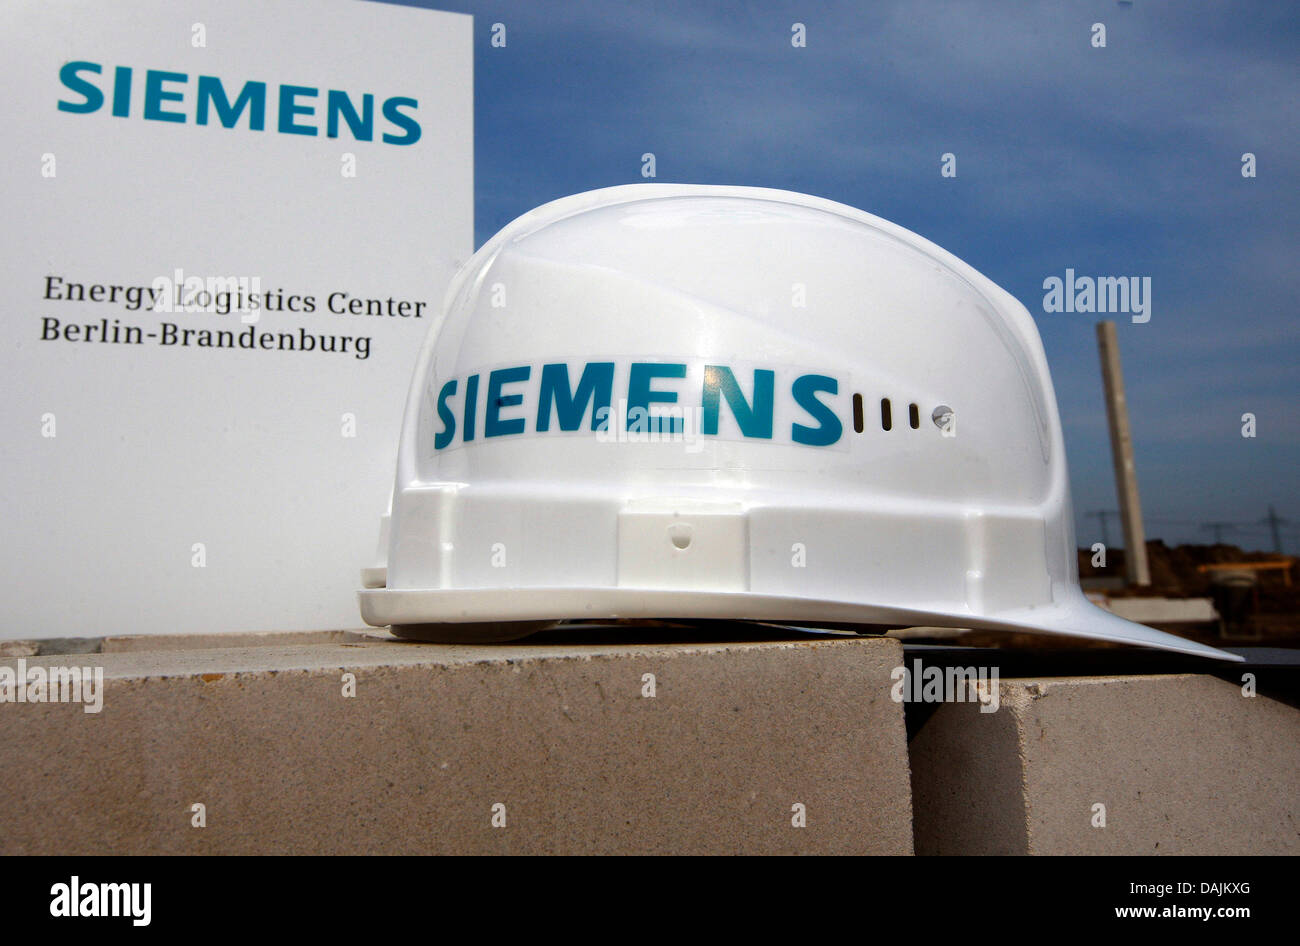 Ein Datei-Bild zeigt einen Siemens-Helm auf einer Baustelle in Ludwigsfelde, Deutschland, 30. März 2011. Die Elektronik Firma Siemens stellt eine radikale Umstrukturierung von Unternehmen. Nach noch unbestätigten Berichterstattung in den Medien, der Verwaltungsrat am 28. März traf die neue Niederlassung für zukunftsweisende Umwelttechnologien zu erstellen. Foto: Nestor Bachmann Stockfoto